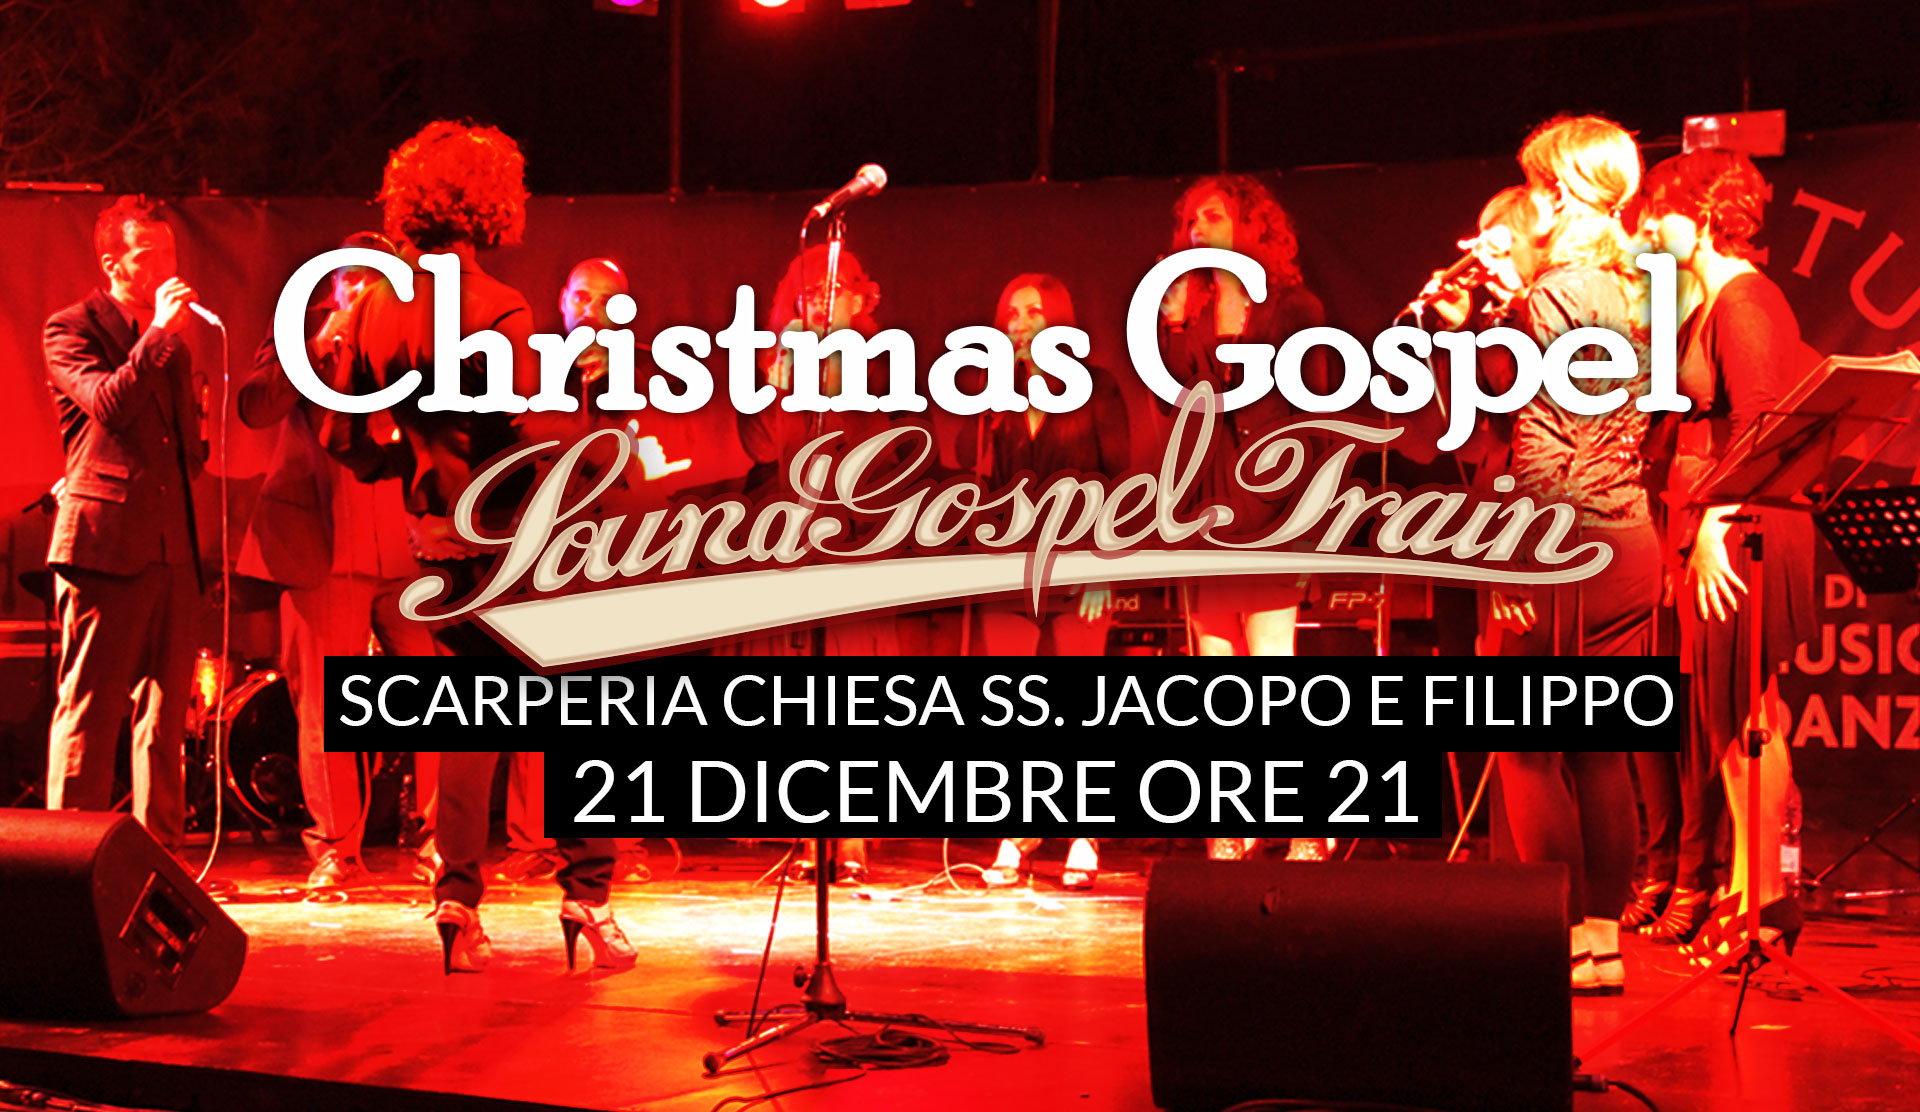 SoundGospelTrain live@Chiesa SS. Jacopo e Filippo 21 Dicembre ore 21